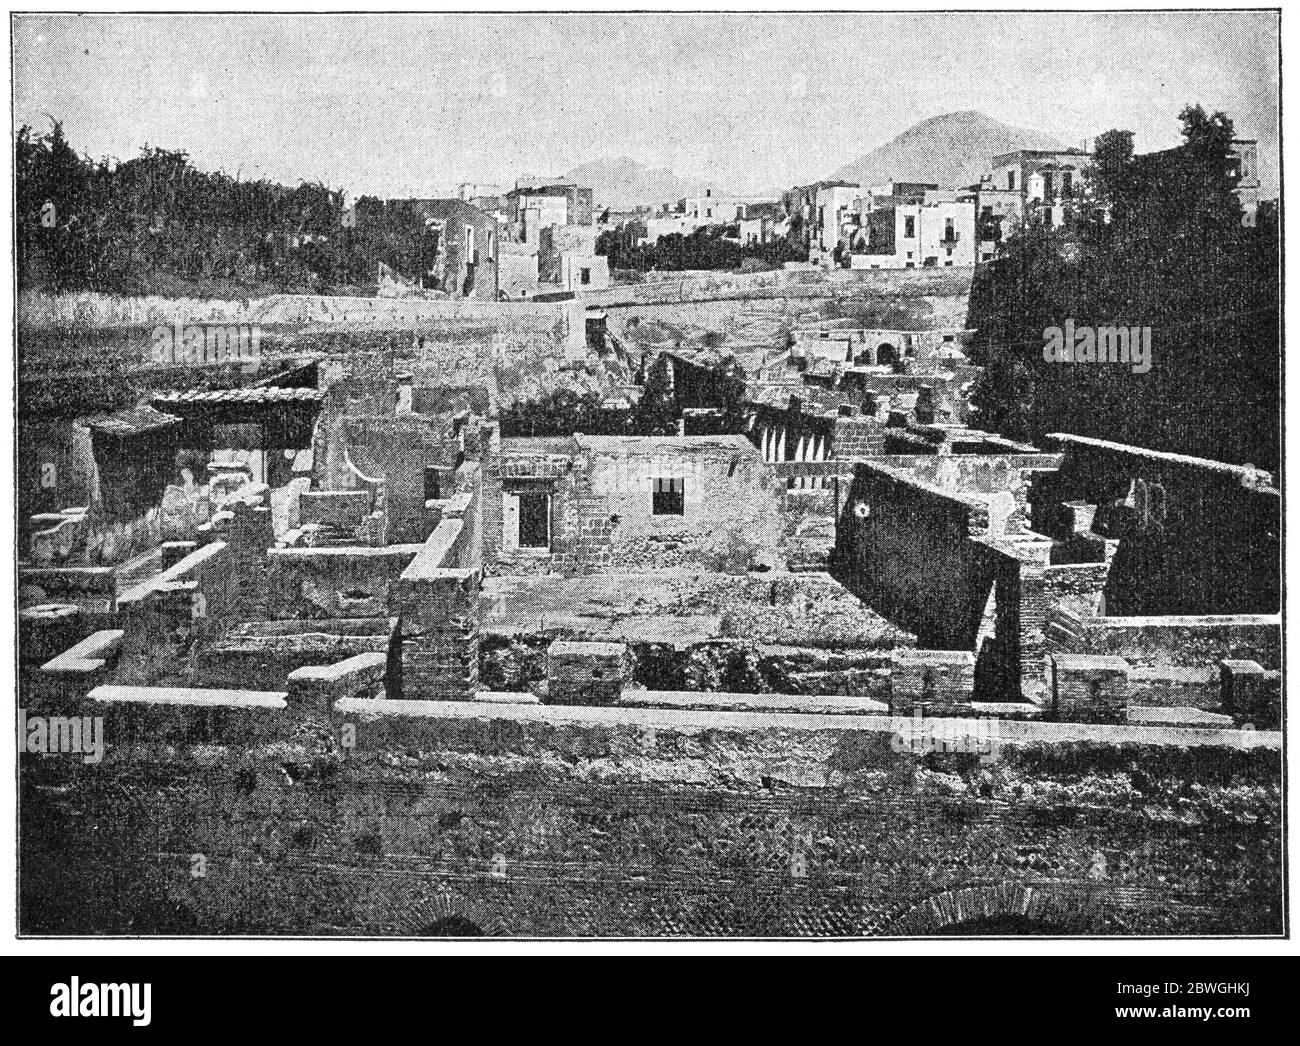 Antica città di Ercolano. La città fu distrutta e sepolta sotto cenere vulcanica e pomice nell'eruzione del Vesuvio nel 79 d.C. Foto Stock